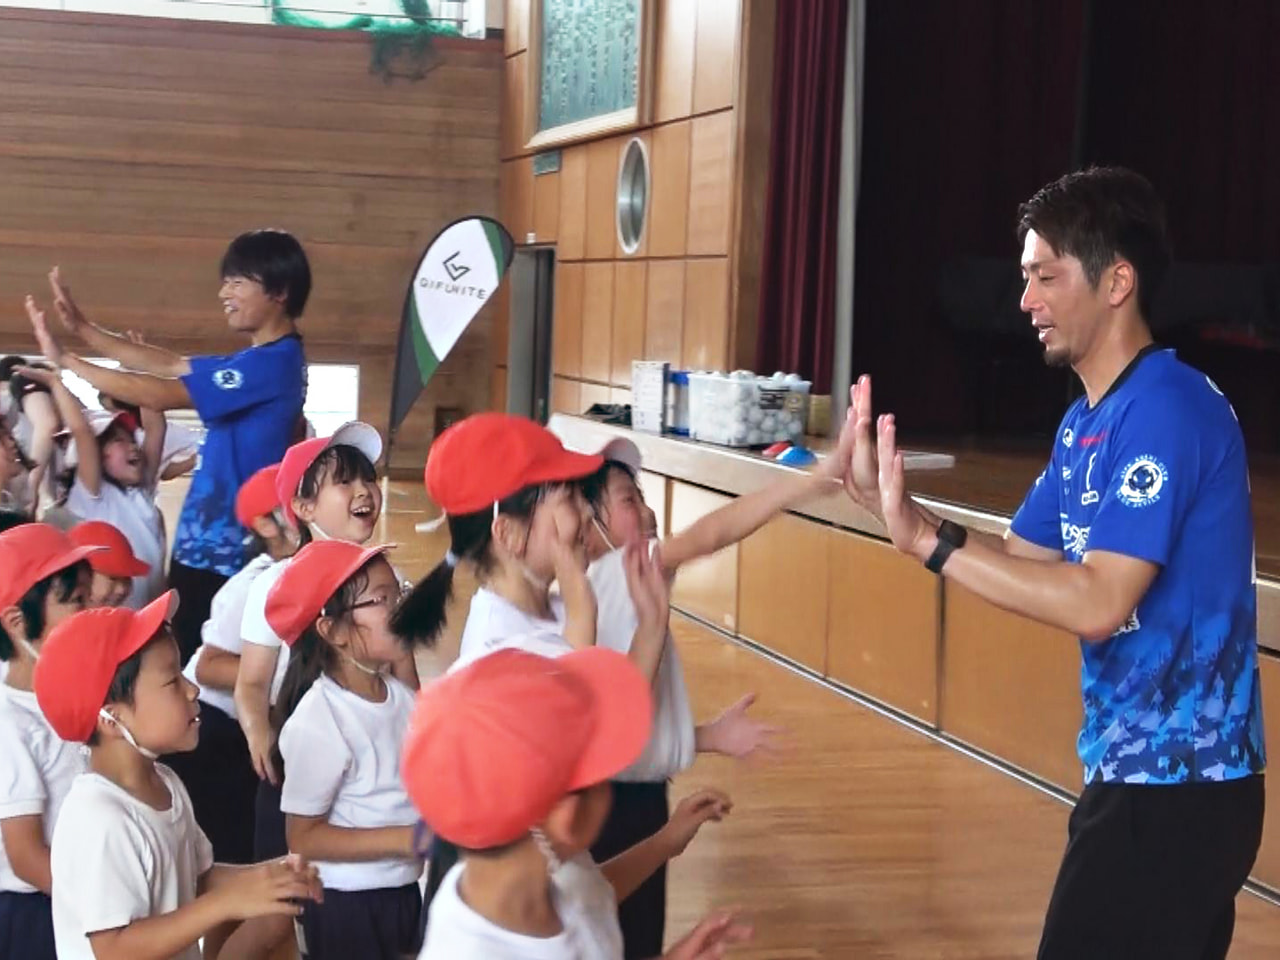 県内を拠点にトップリーグで活躍する選手を招いた体育の授業が、山県市の小学校で開か...